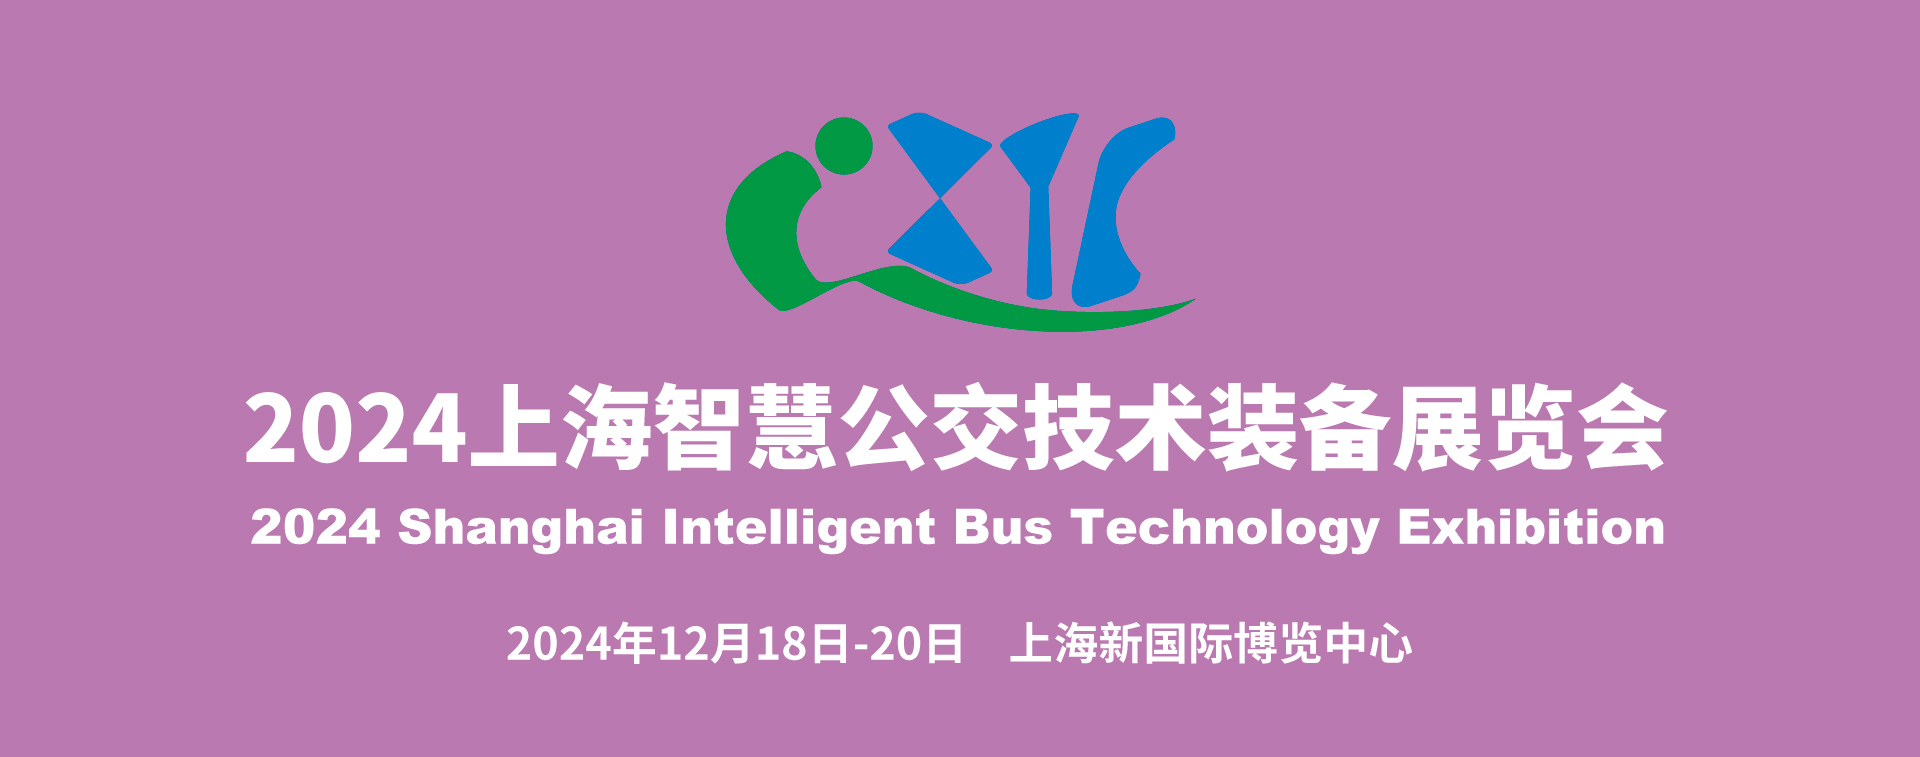 IBTE 2024智慧公交技术装备展览会